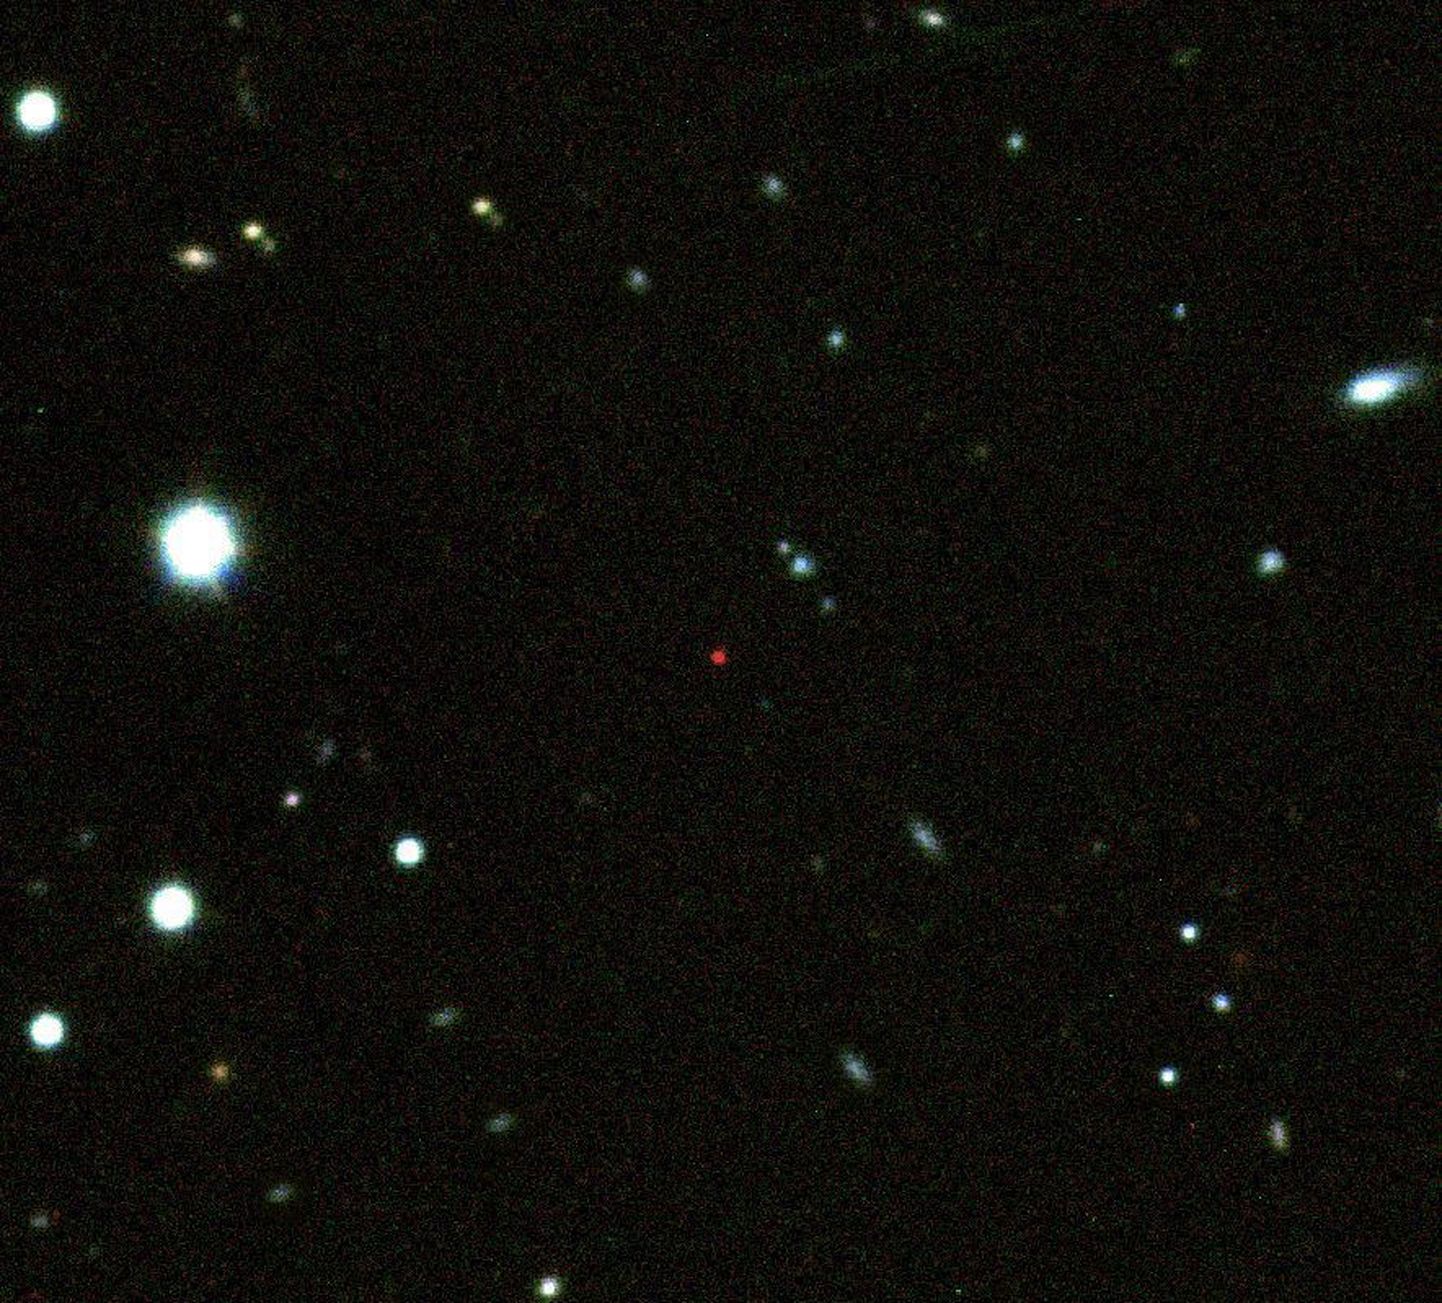 Pildi keskel olev punane täpike ongi kaugeim kosmoseobjekt.